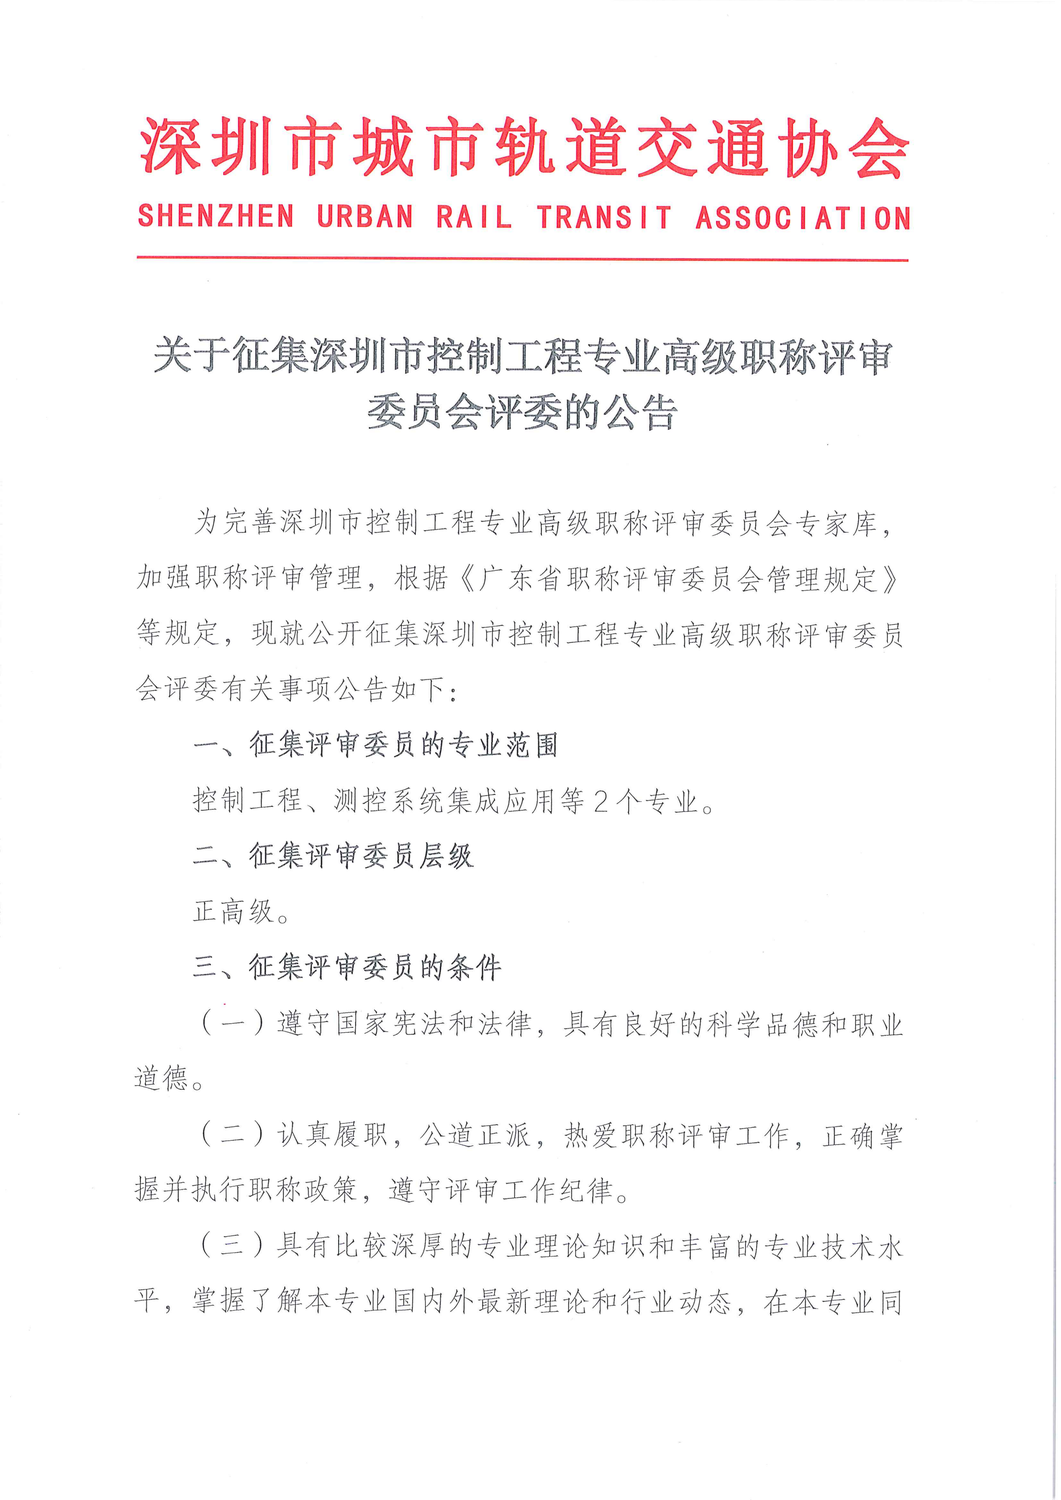 关于征集深圳市控制工程专业高级职称评审委员会评委的公告_00.png